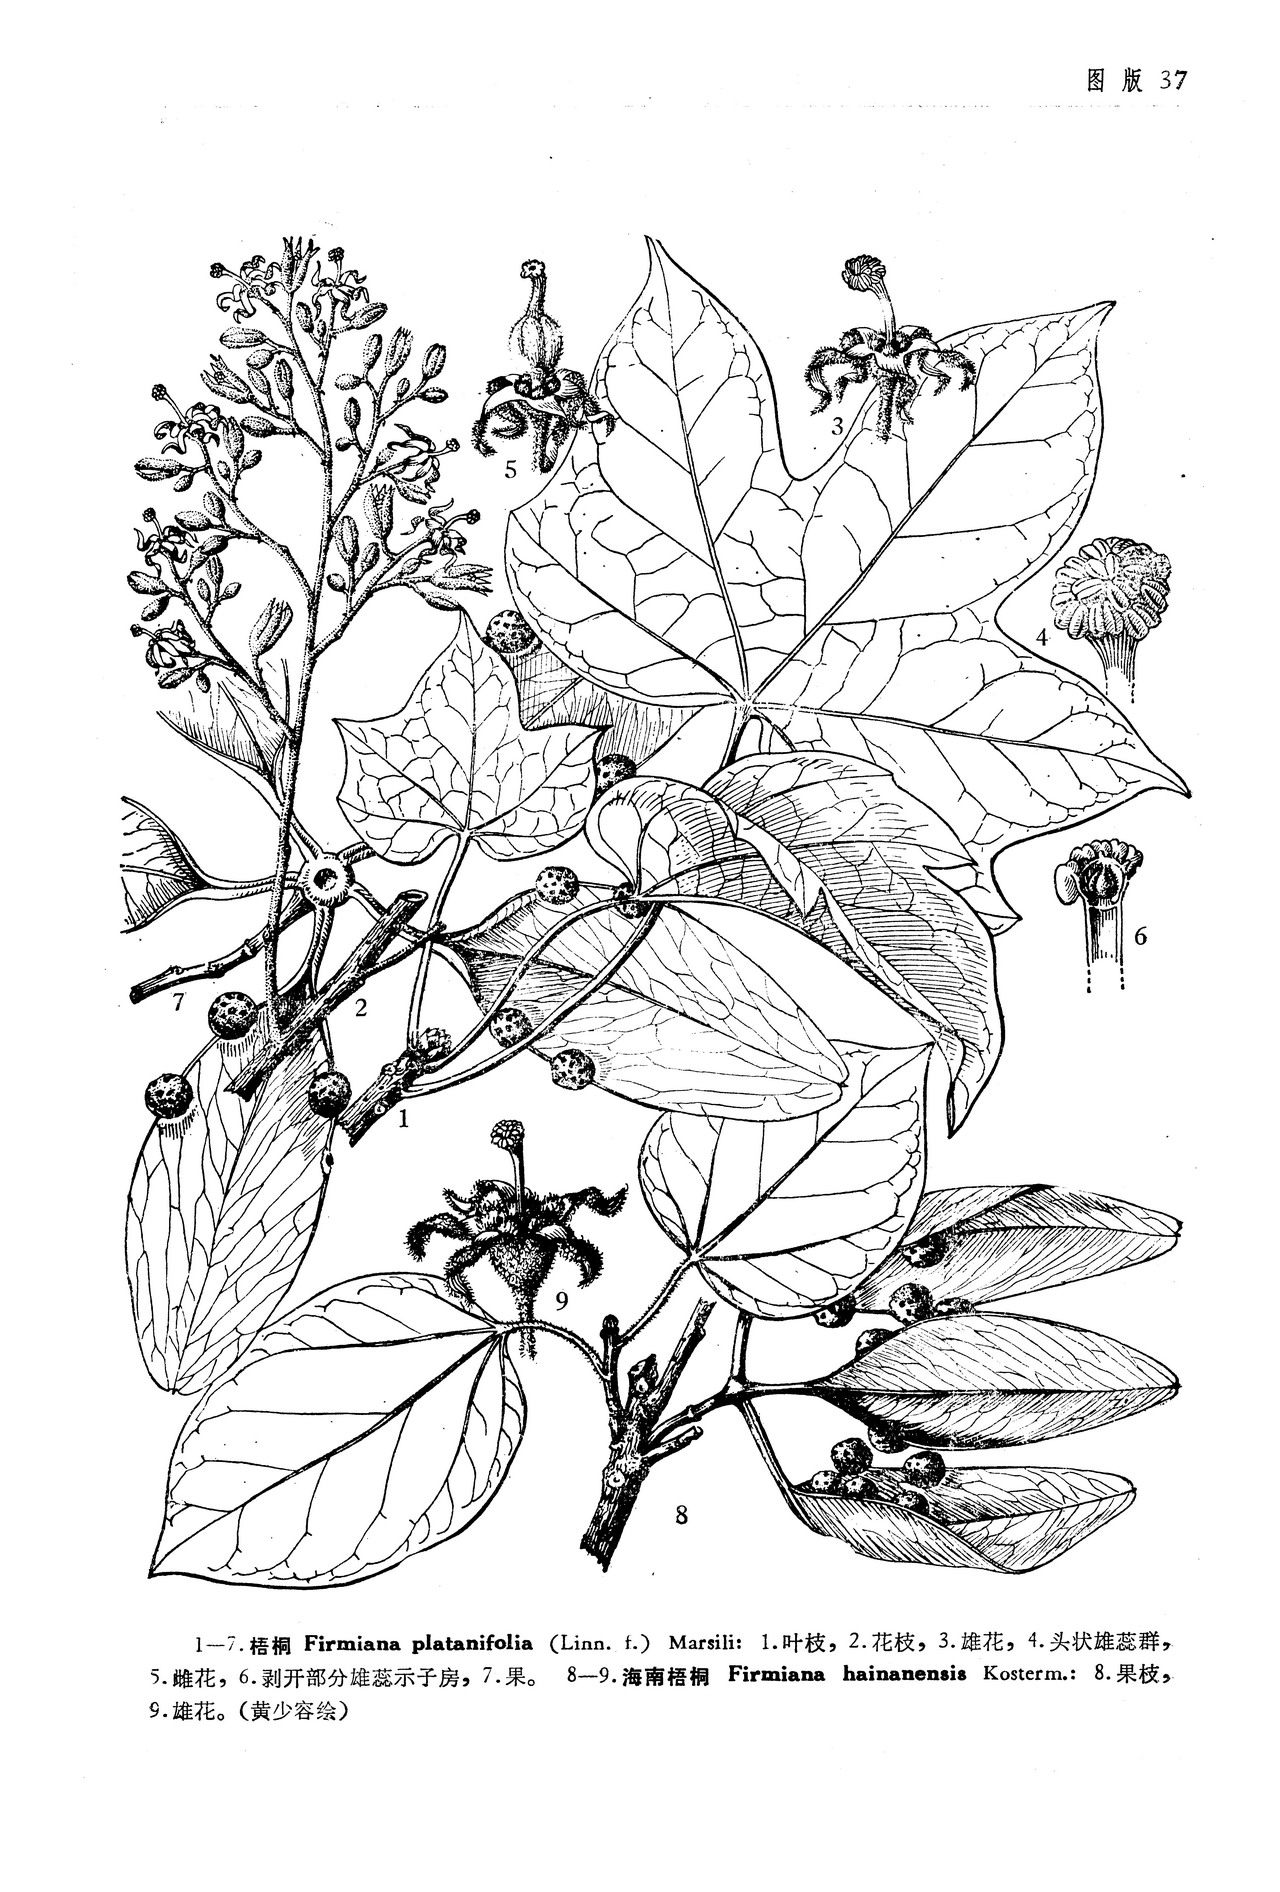 梧桐firmiana platanifolia (l.f.) marsili